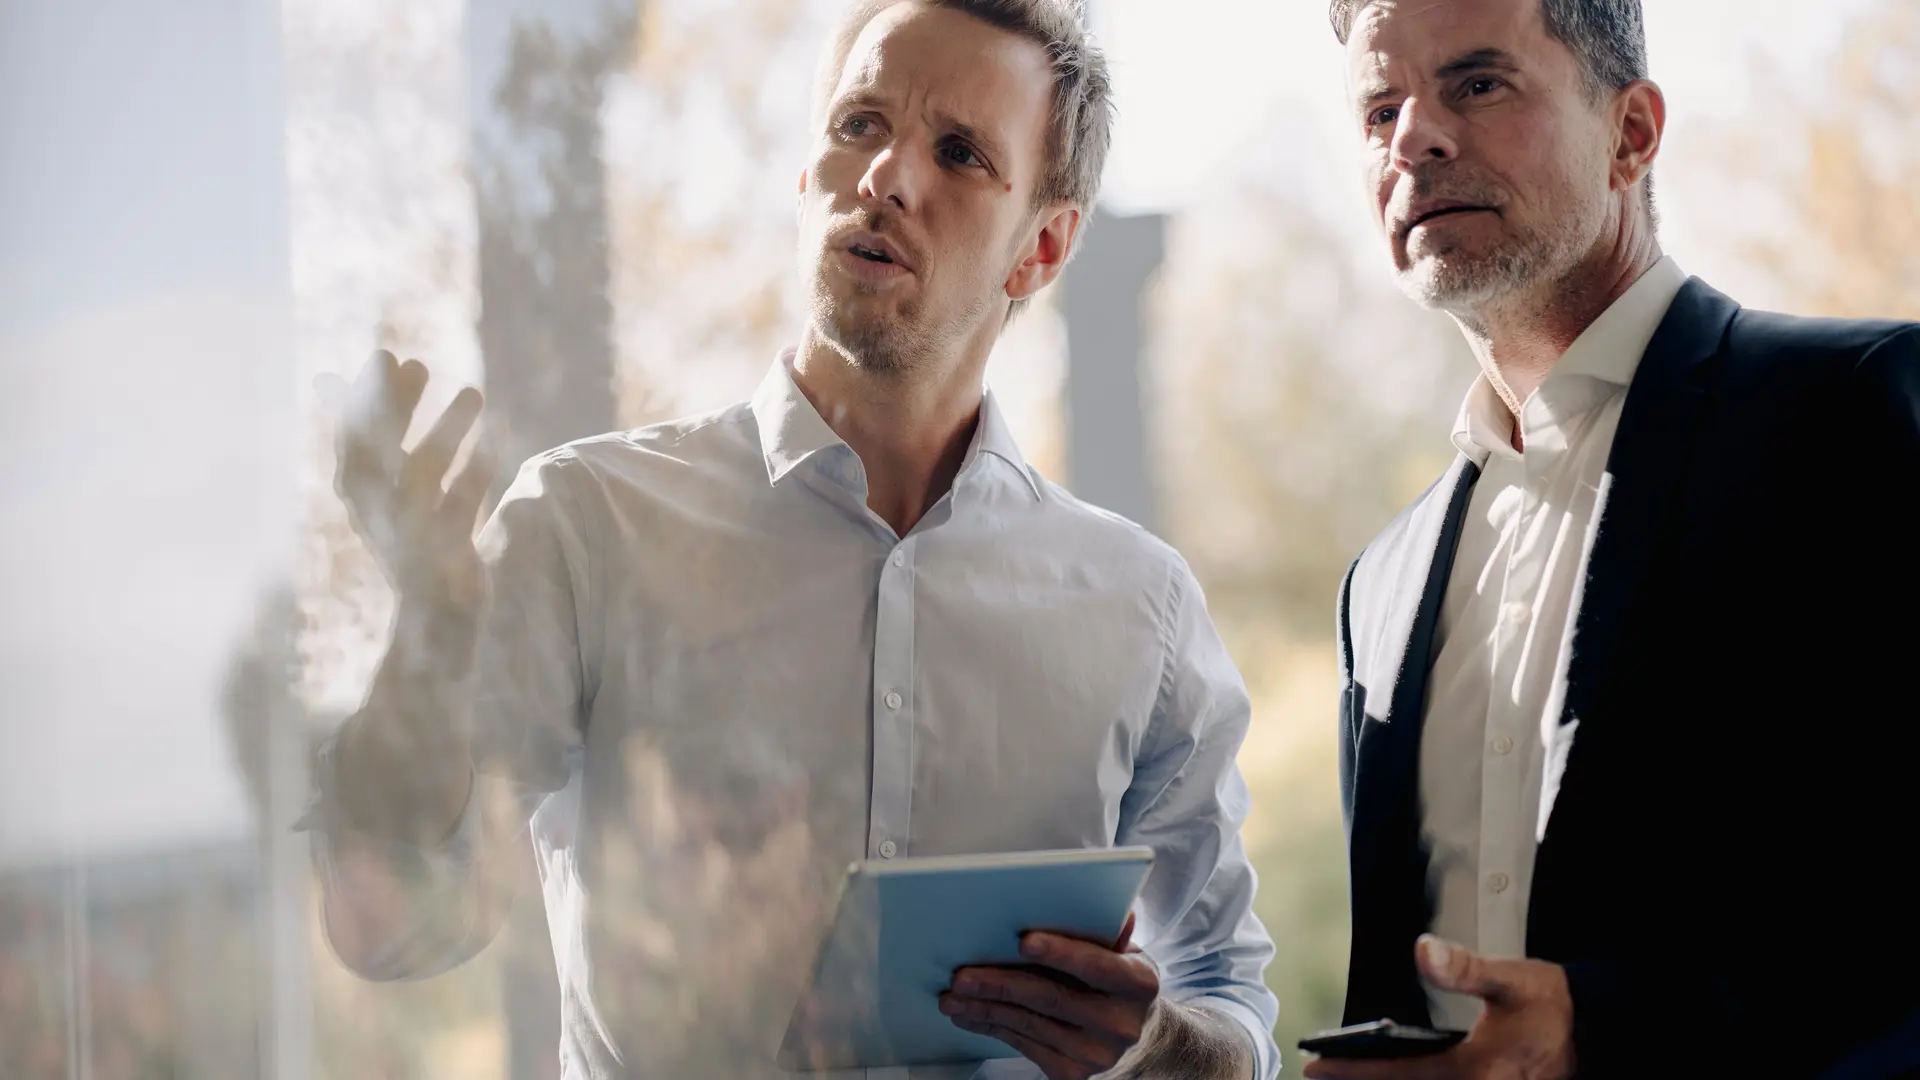 Zwei Männer in Business-Kleidung unterhalten sich. Ein Mann gestikuliert und hält Papiere in der Hand, der andere Mann hält ein Smartphone. Beide blicken durch eine Glasscheibe nach oben.